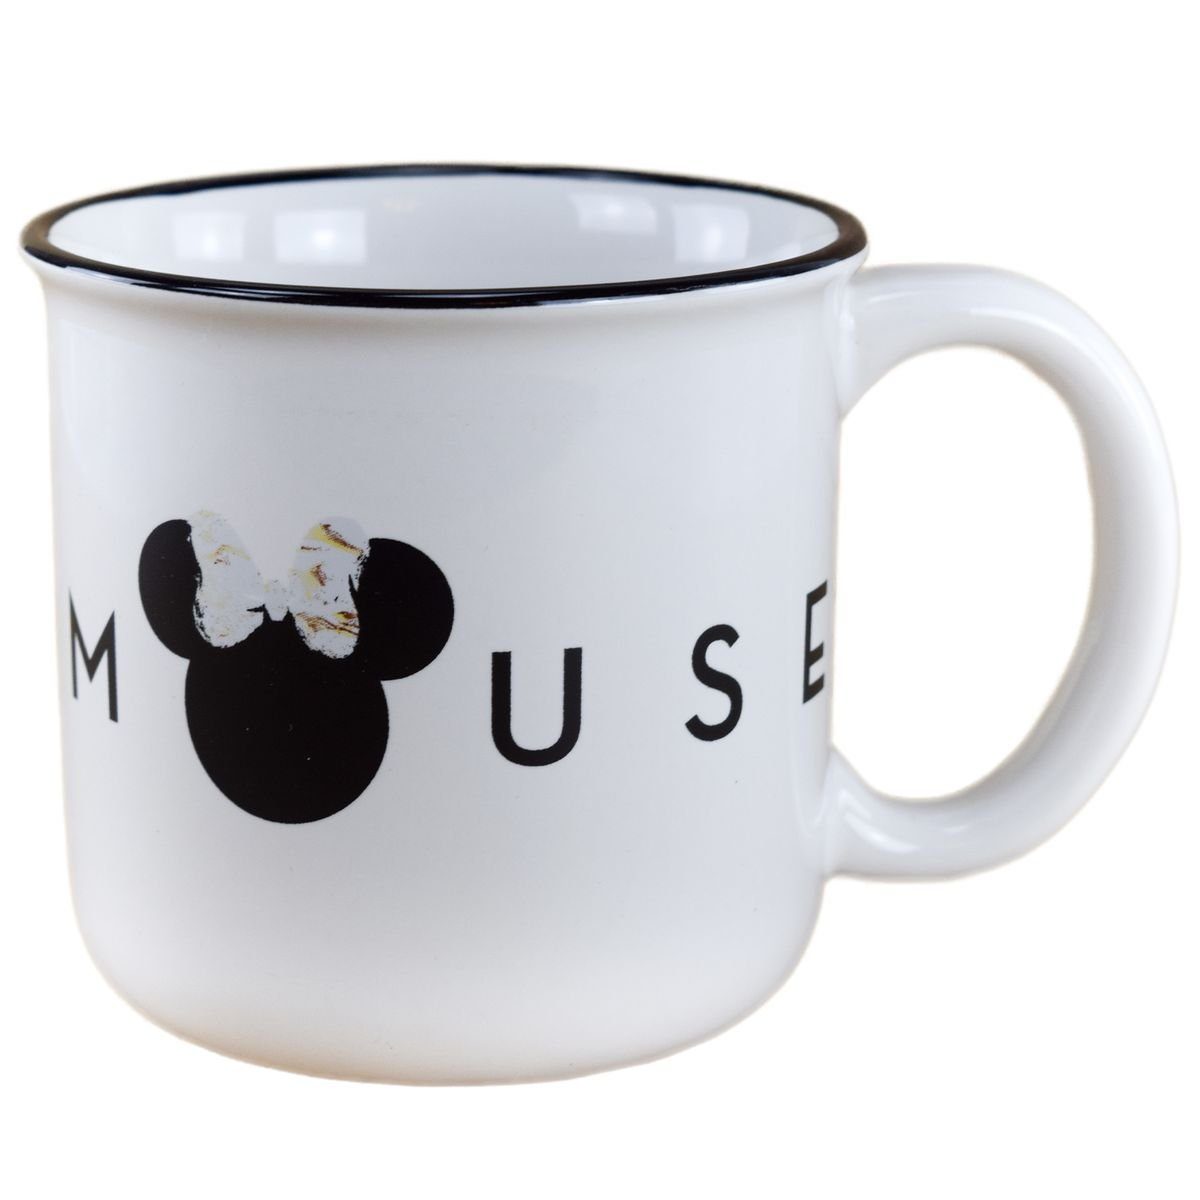 Stor Tasse Disney Minnie Mouse Frühstückstasse Kopf & Schleife ca. 400 ml Tasse, Keramik, authentisches Design